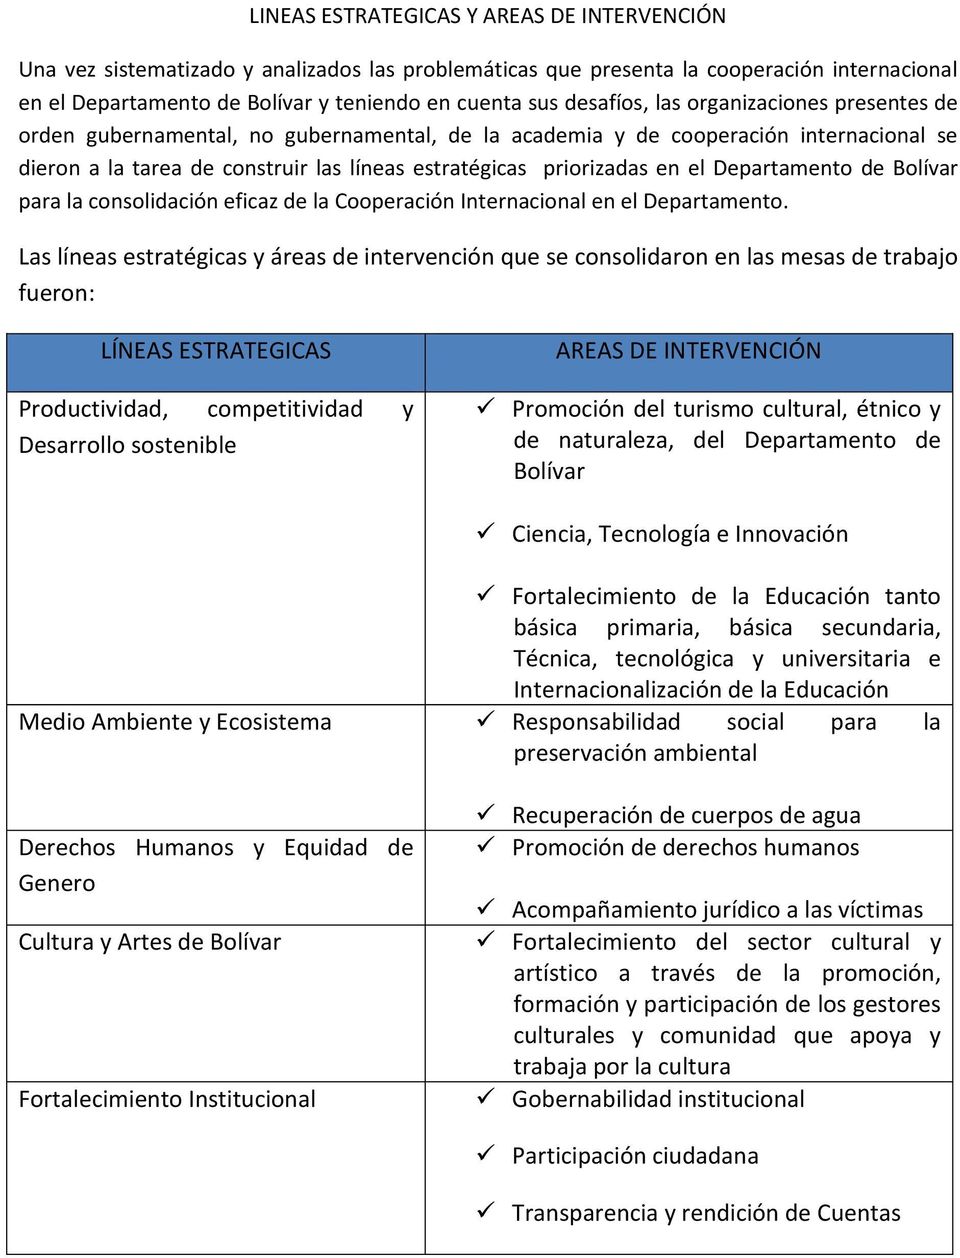 el Departamento de Bolívar para la consolidación eficaz de la Cooperación Internacional en el Departamento.